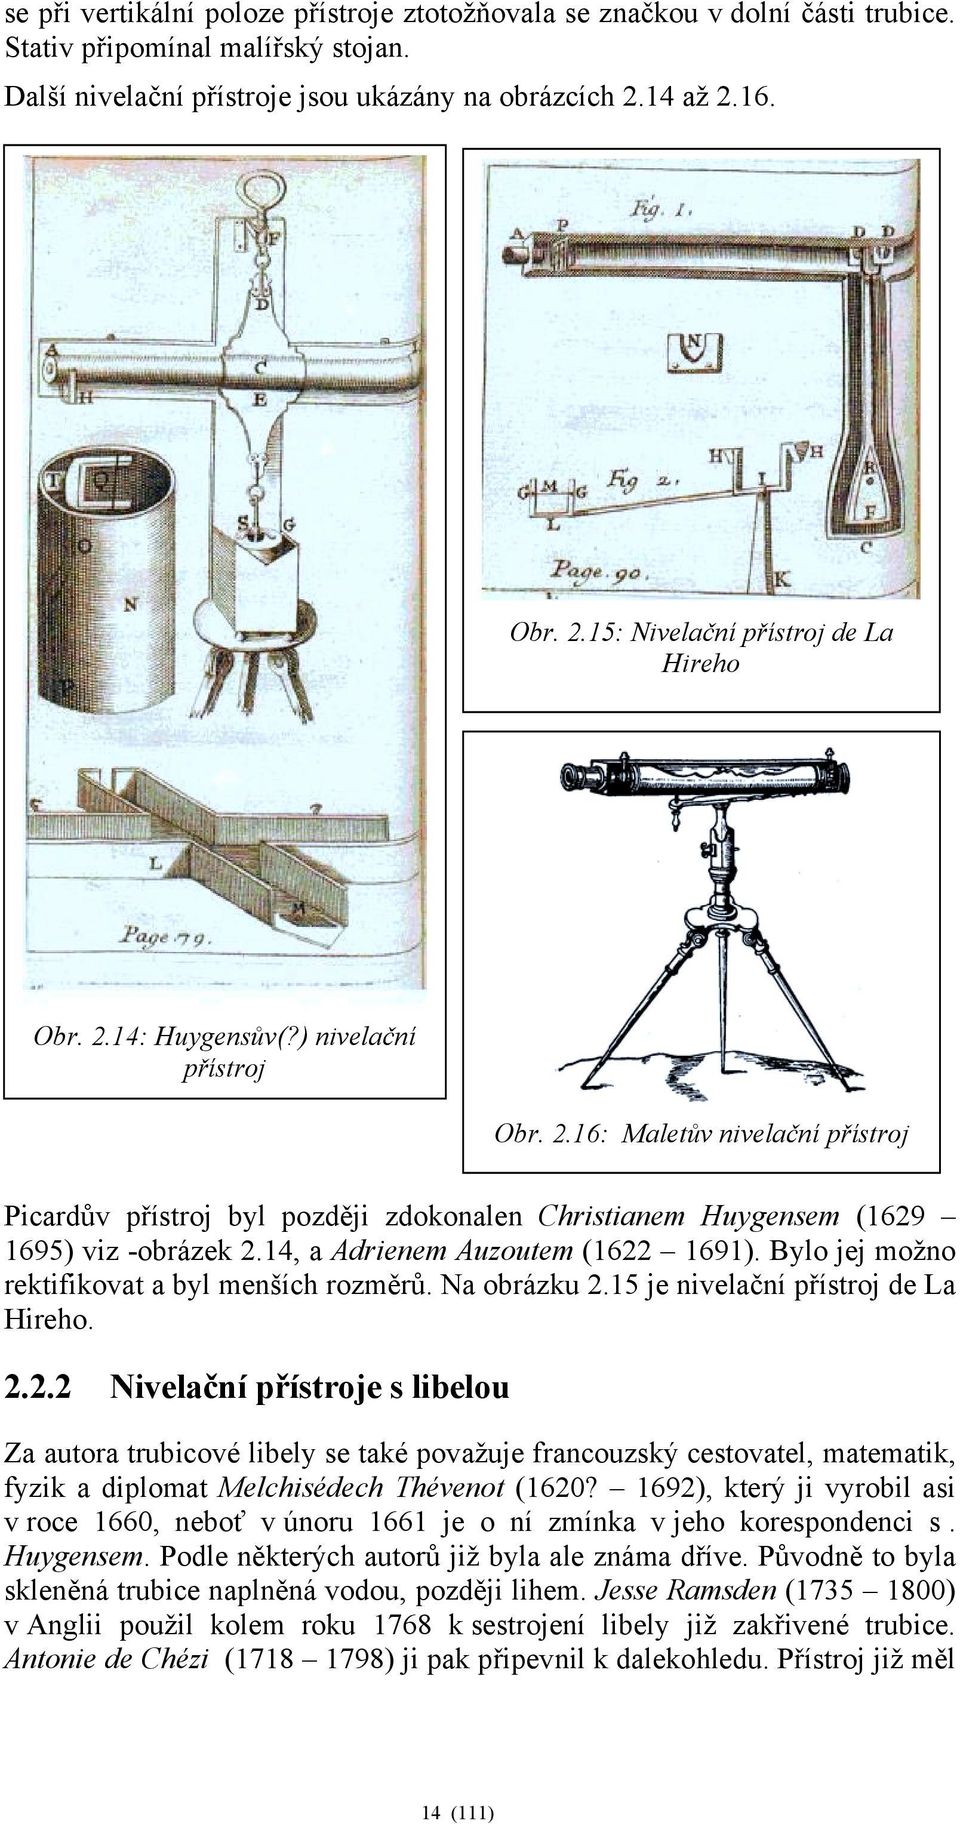 14, a Adrienem Auzoutem (1622 1691). Bylo jej možno rektifikovat a byl menších rozměrů. Na obrázku 2.15 je nivelační přístroj de La Hireho. 2.2.2 Nivelační přístroje s libelou Za autora trubicové libely se také považuje francouzský cestovatel, matematik, fyzik a diplomat Melchisédech Thévenot (1620?